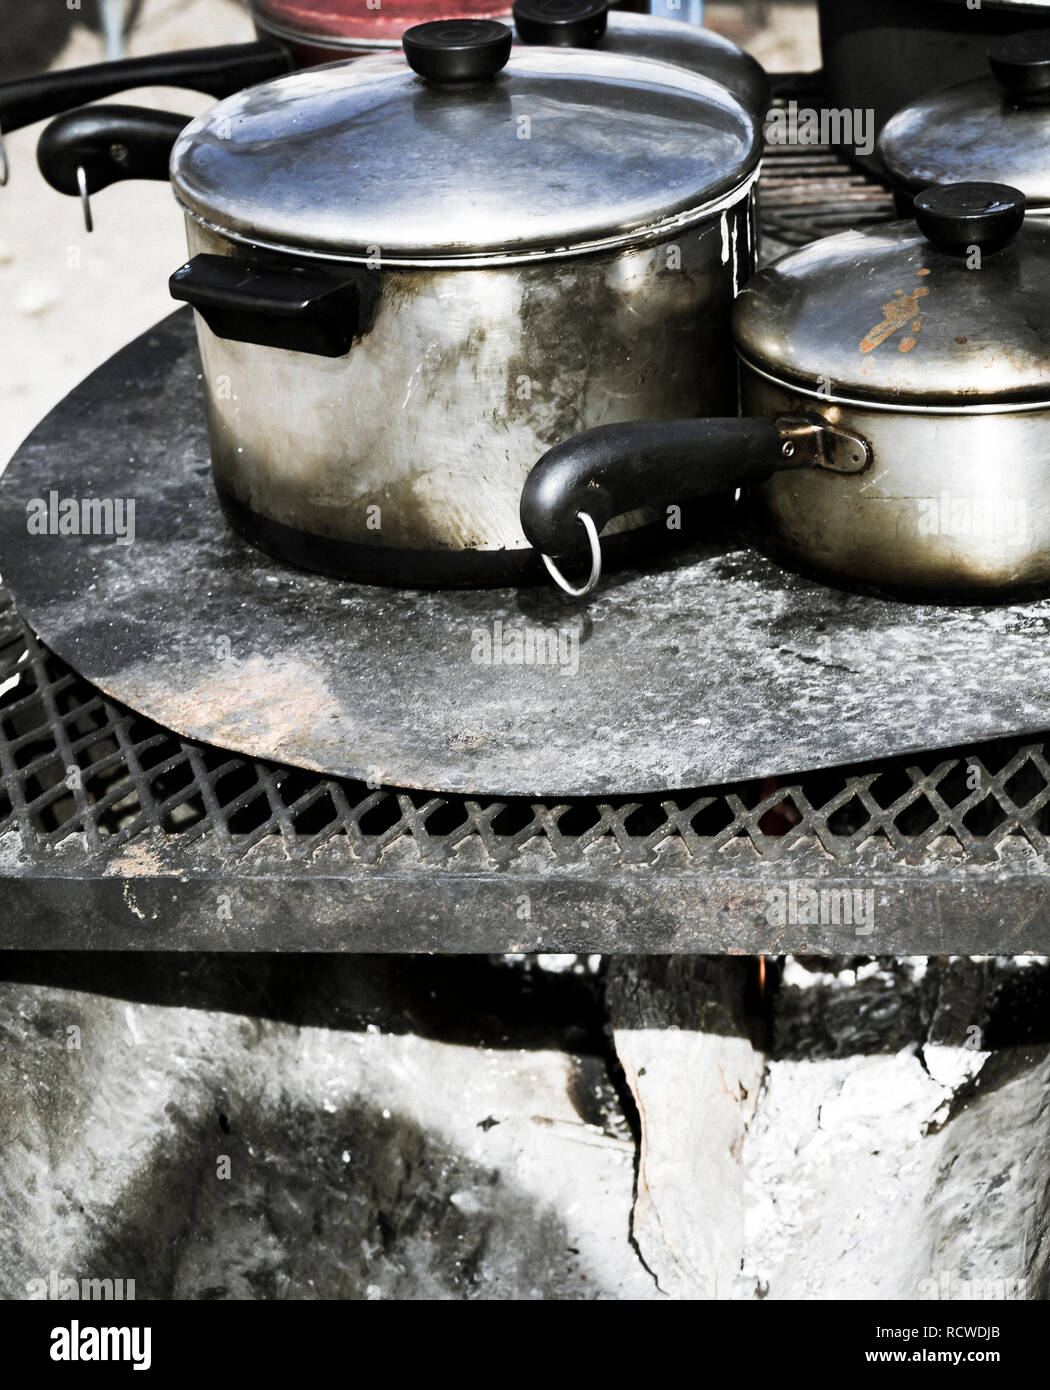 3,078 Aluminium Cooking Pots Images, Stock Photos, 3D objects, & Vectors